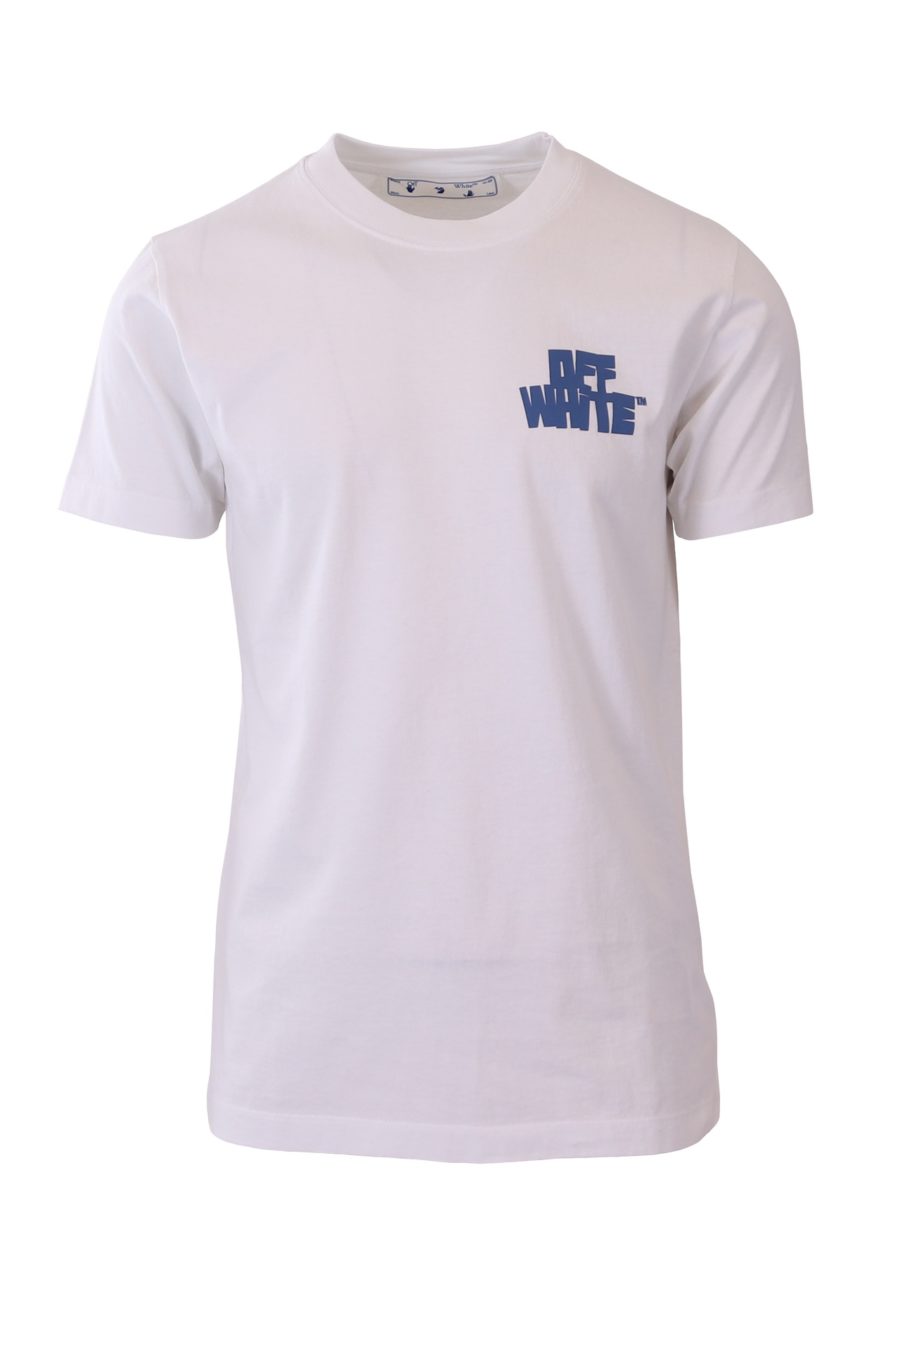 T-shirt Off-White white blue print - 0505ba4dc0632876082a1700eb5faed2a08eabec